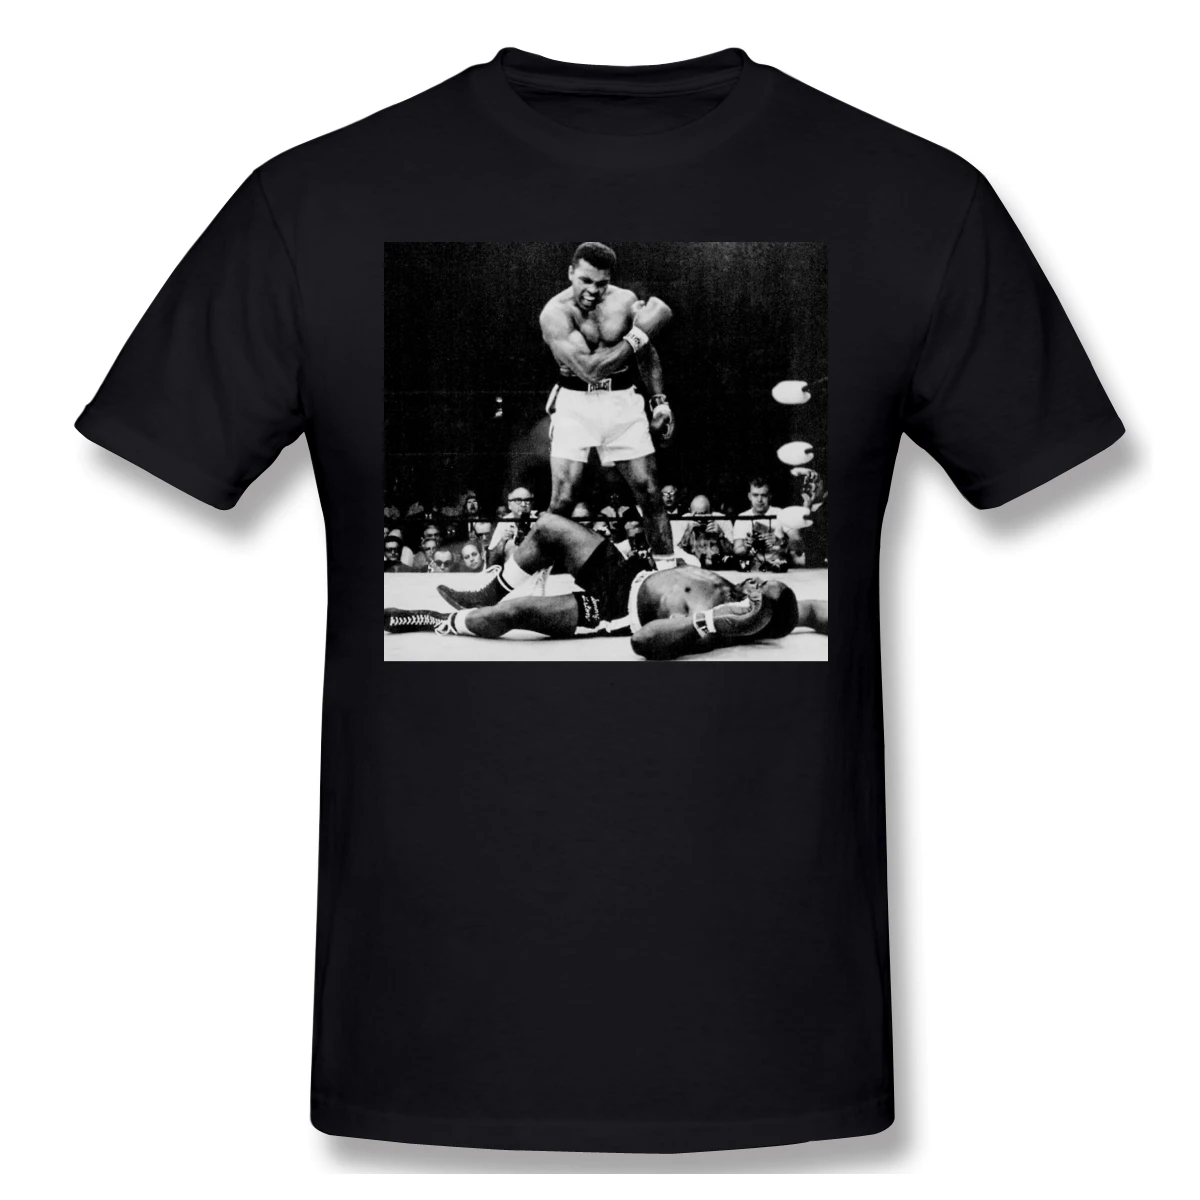 

Мужская футболка из 100% хлопка с графическим размера плюс топы с принтом букв Muhammad Ali Knocks Out Sonny Liston оверсайз